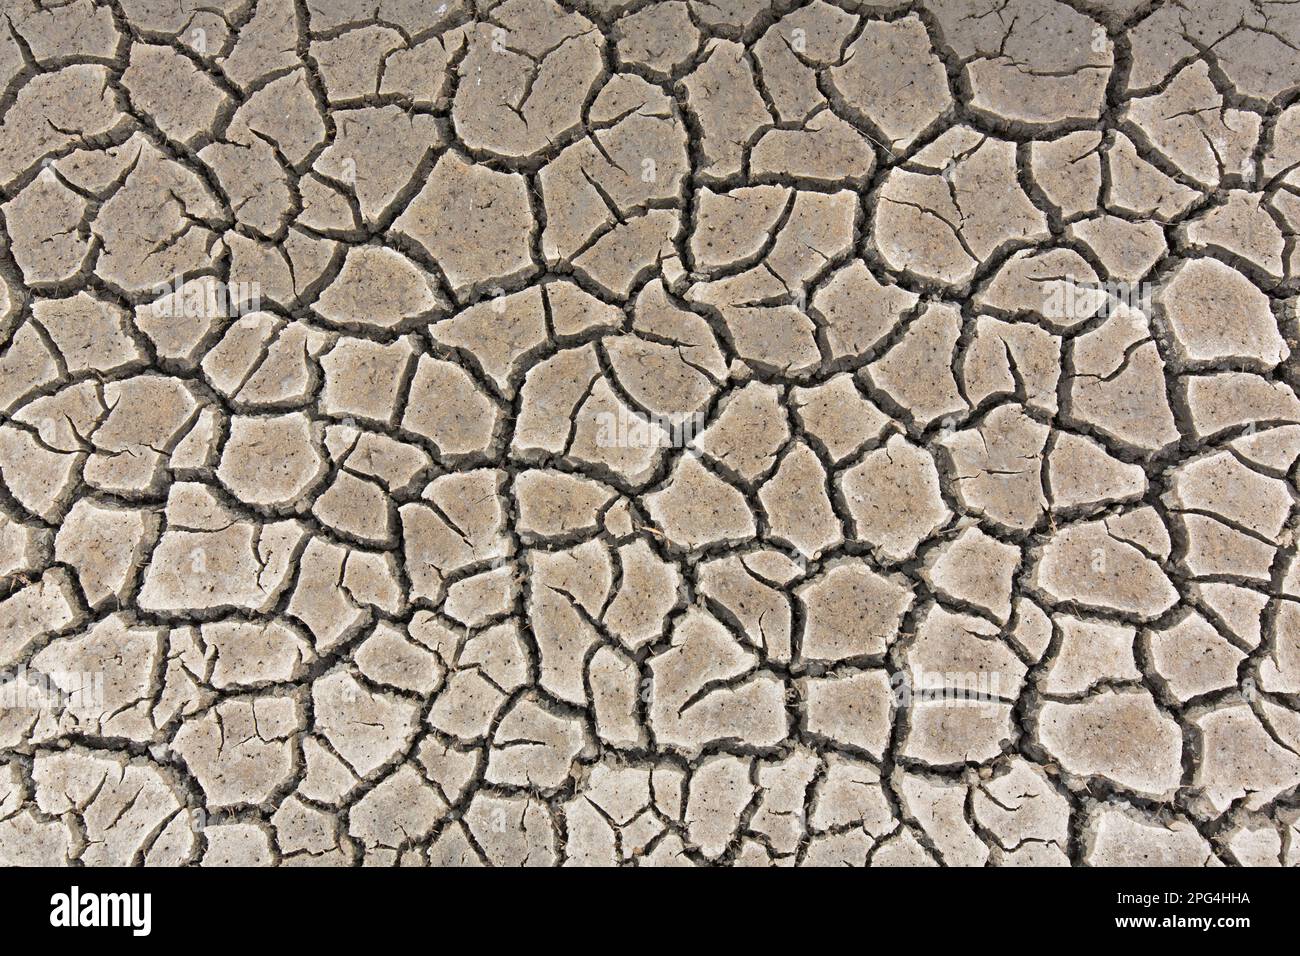 Abstraktes Muster von trockenem, rissigem Schlamm in trockenen Feuchtgebieten, verursacht durch längere Trockenheit im Sommer bei hohen Witterungsbedingungen Stockfoto